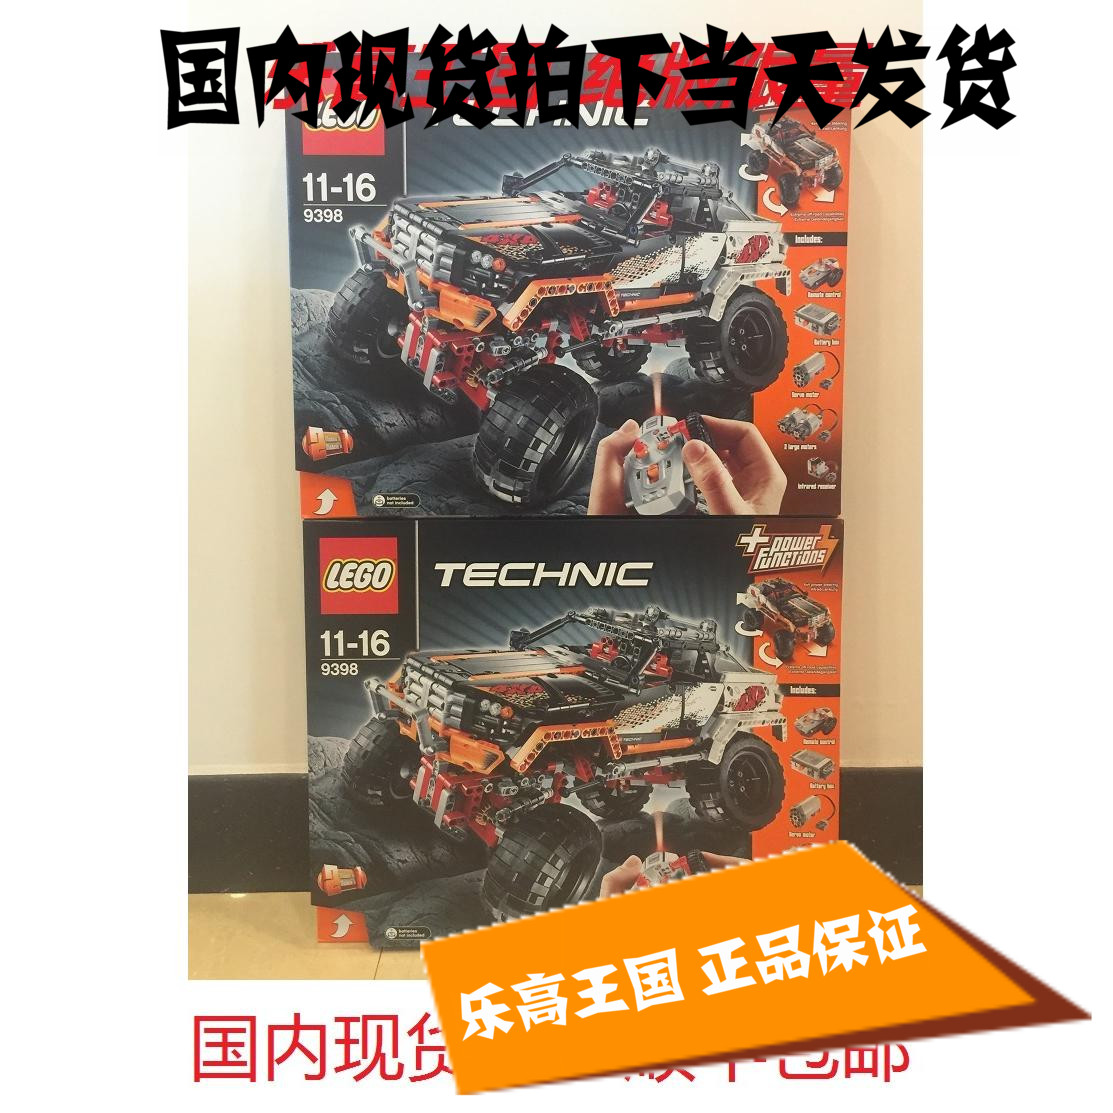 正品Lego乐高 9398 科技系列Technic 遥控四驱越野车国內绝版现货